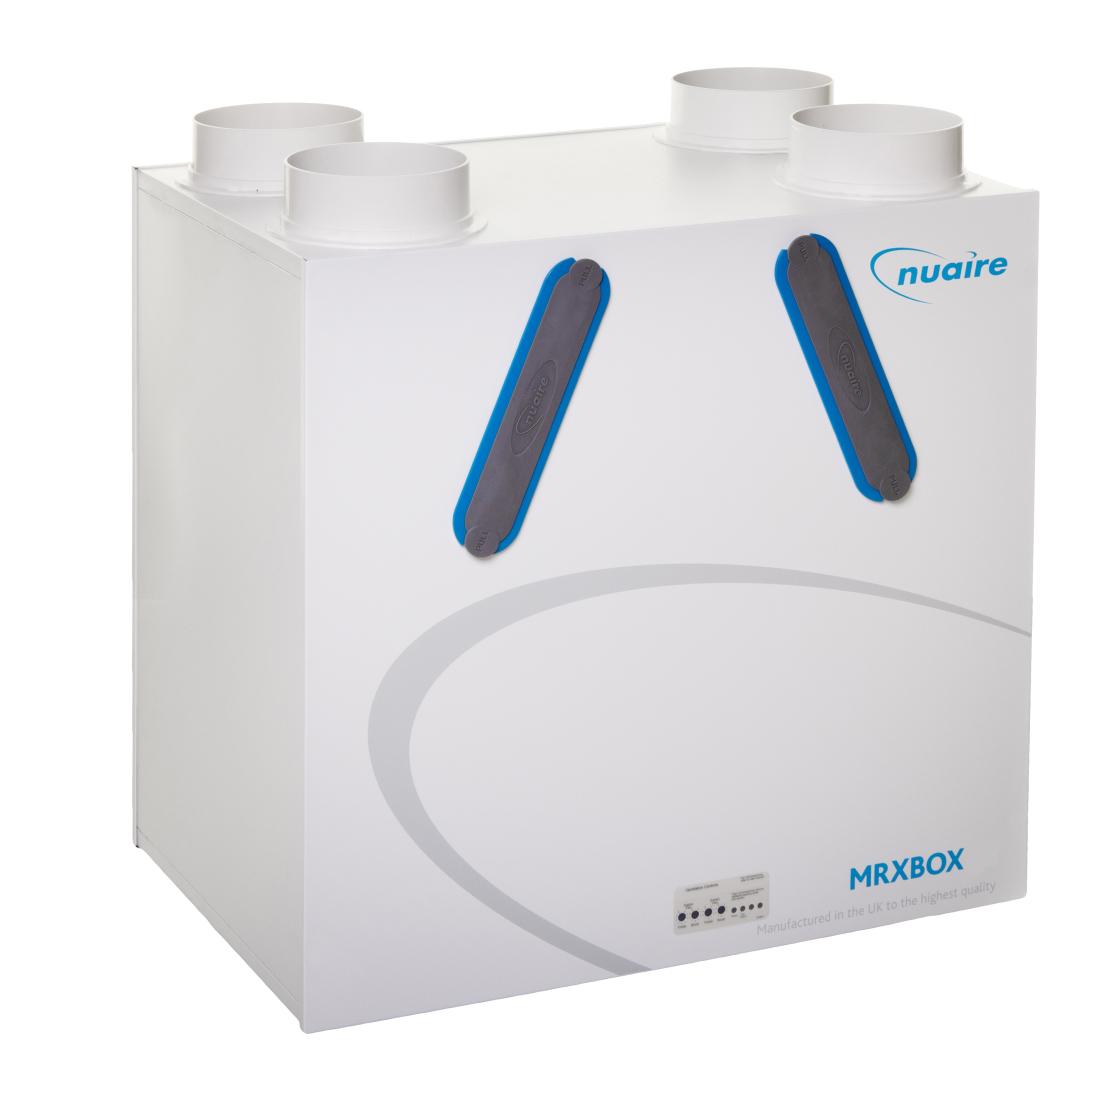 Nuaire MRXBOXAB-ECO4 Heat Recovery System